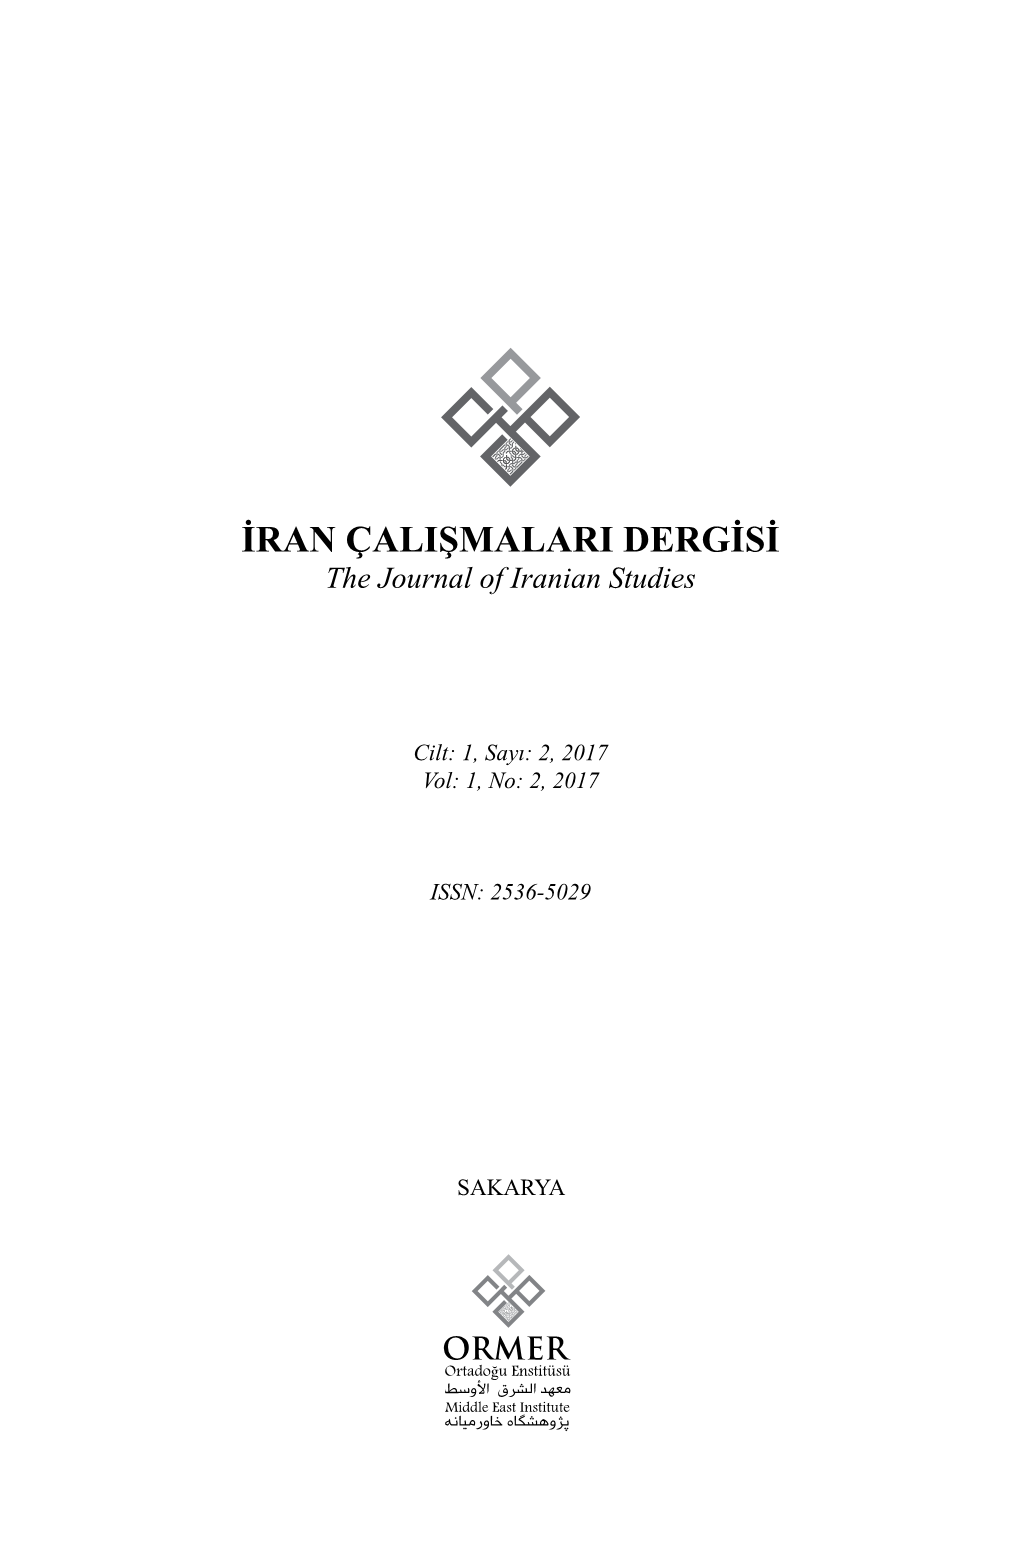 İRAN ÇALIŞMALARI DERGİSİ the Journal of Iranian Studies